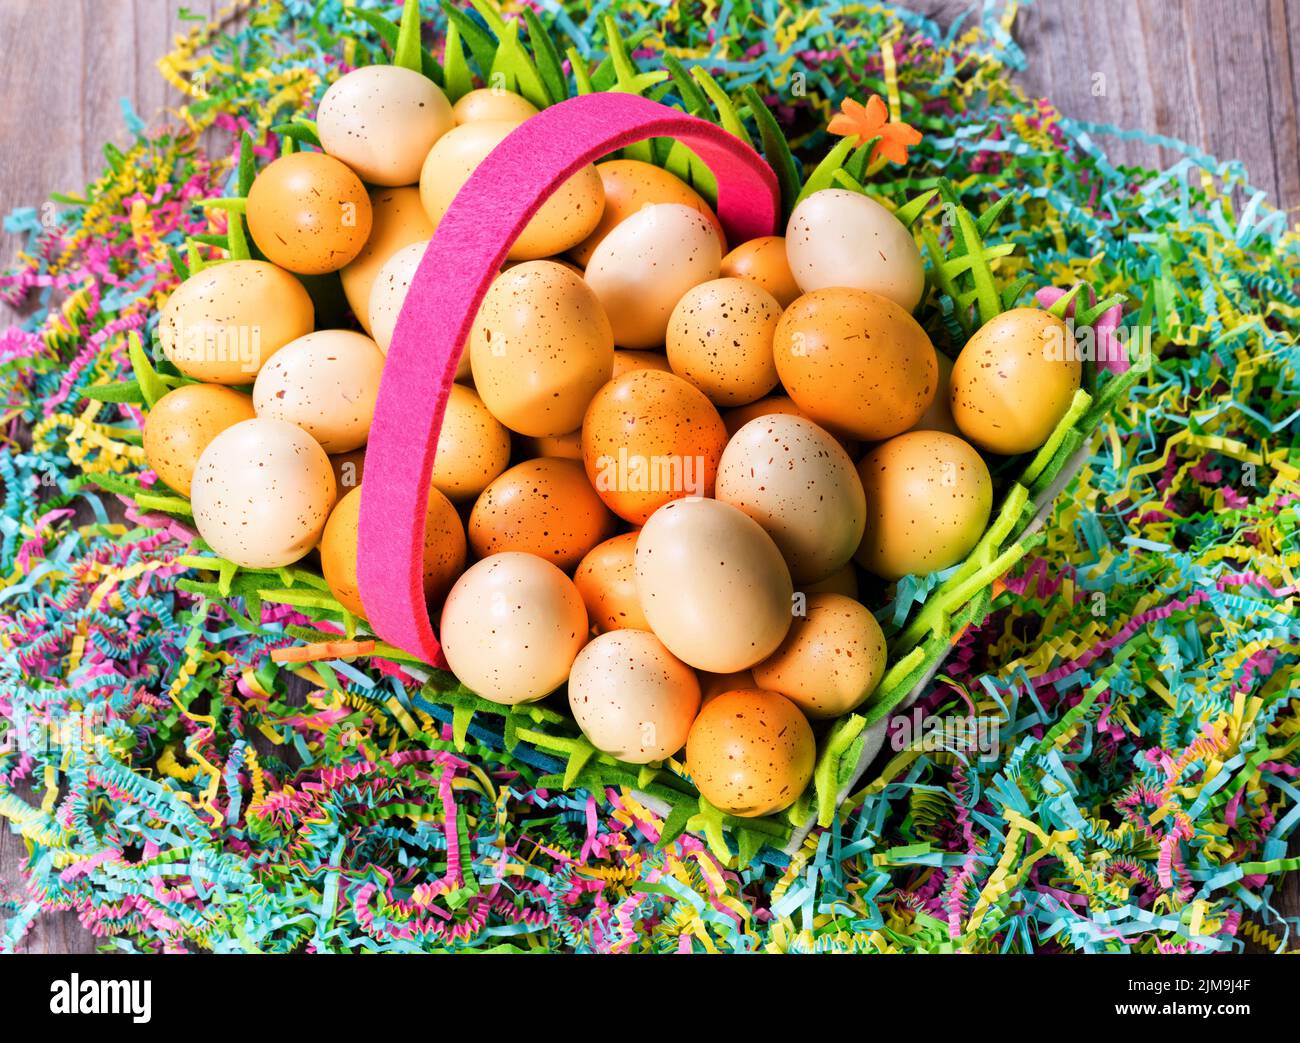 Huevos de Pascua en la cesta encima de colorido papel Mache con rústicas tablas de madera Foto de stock